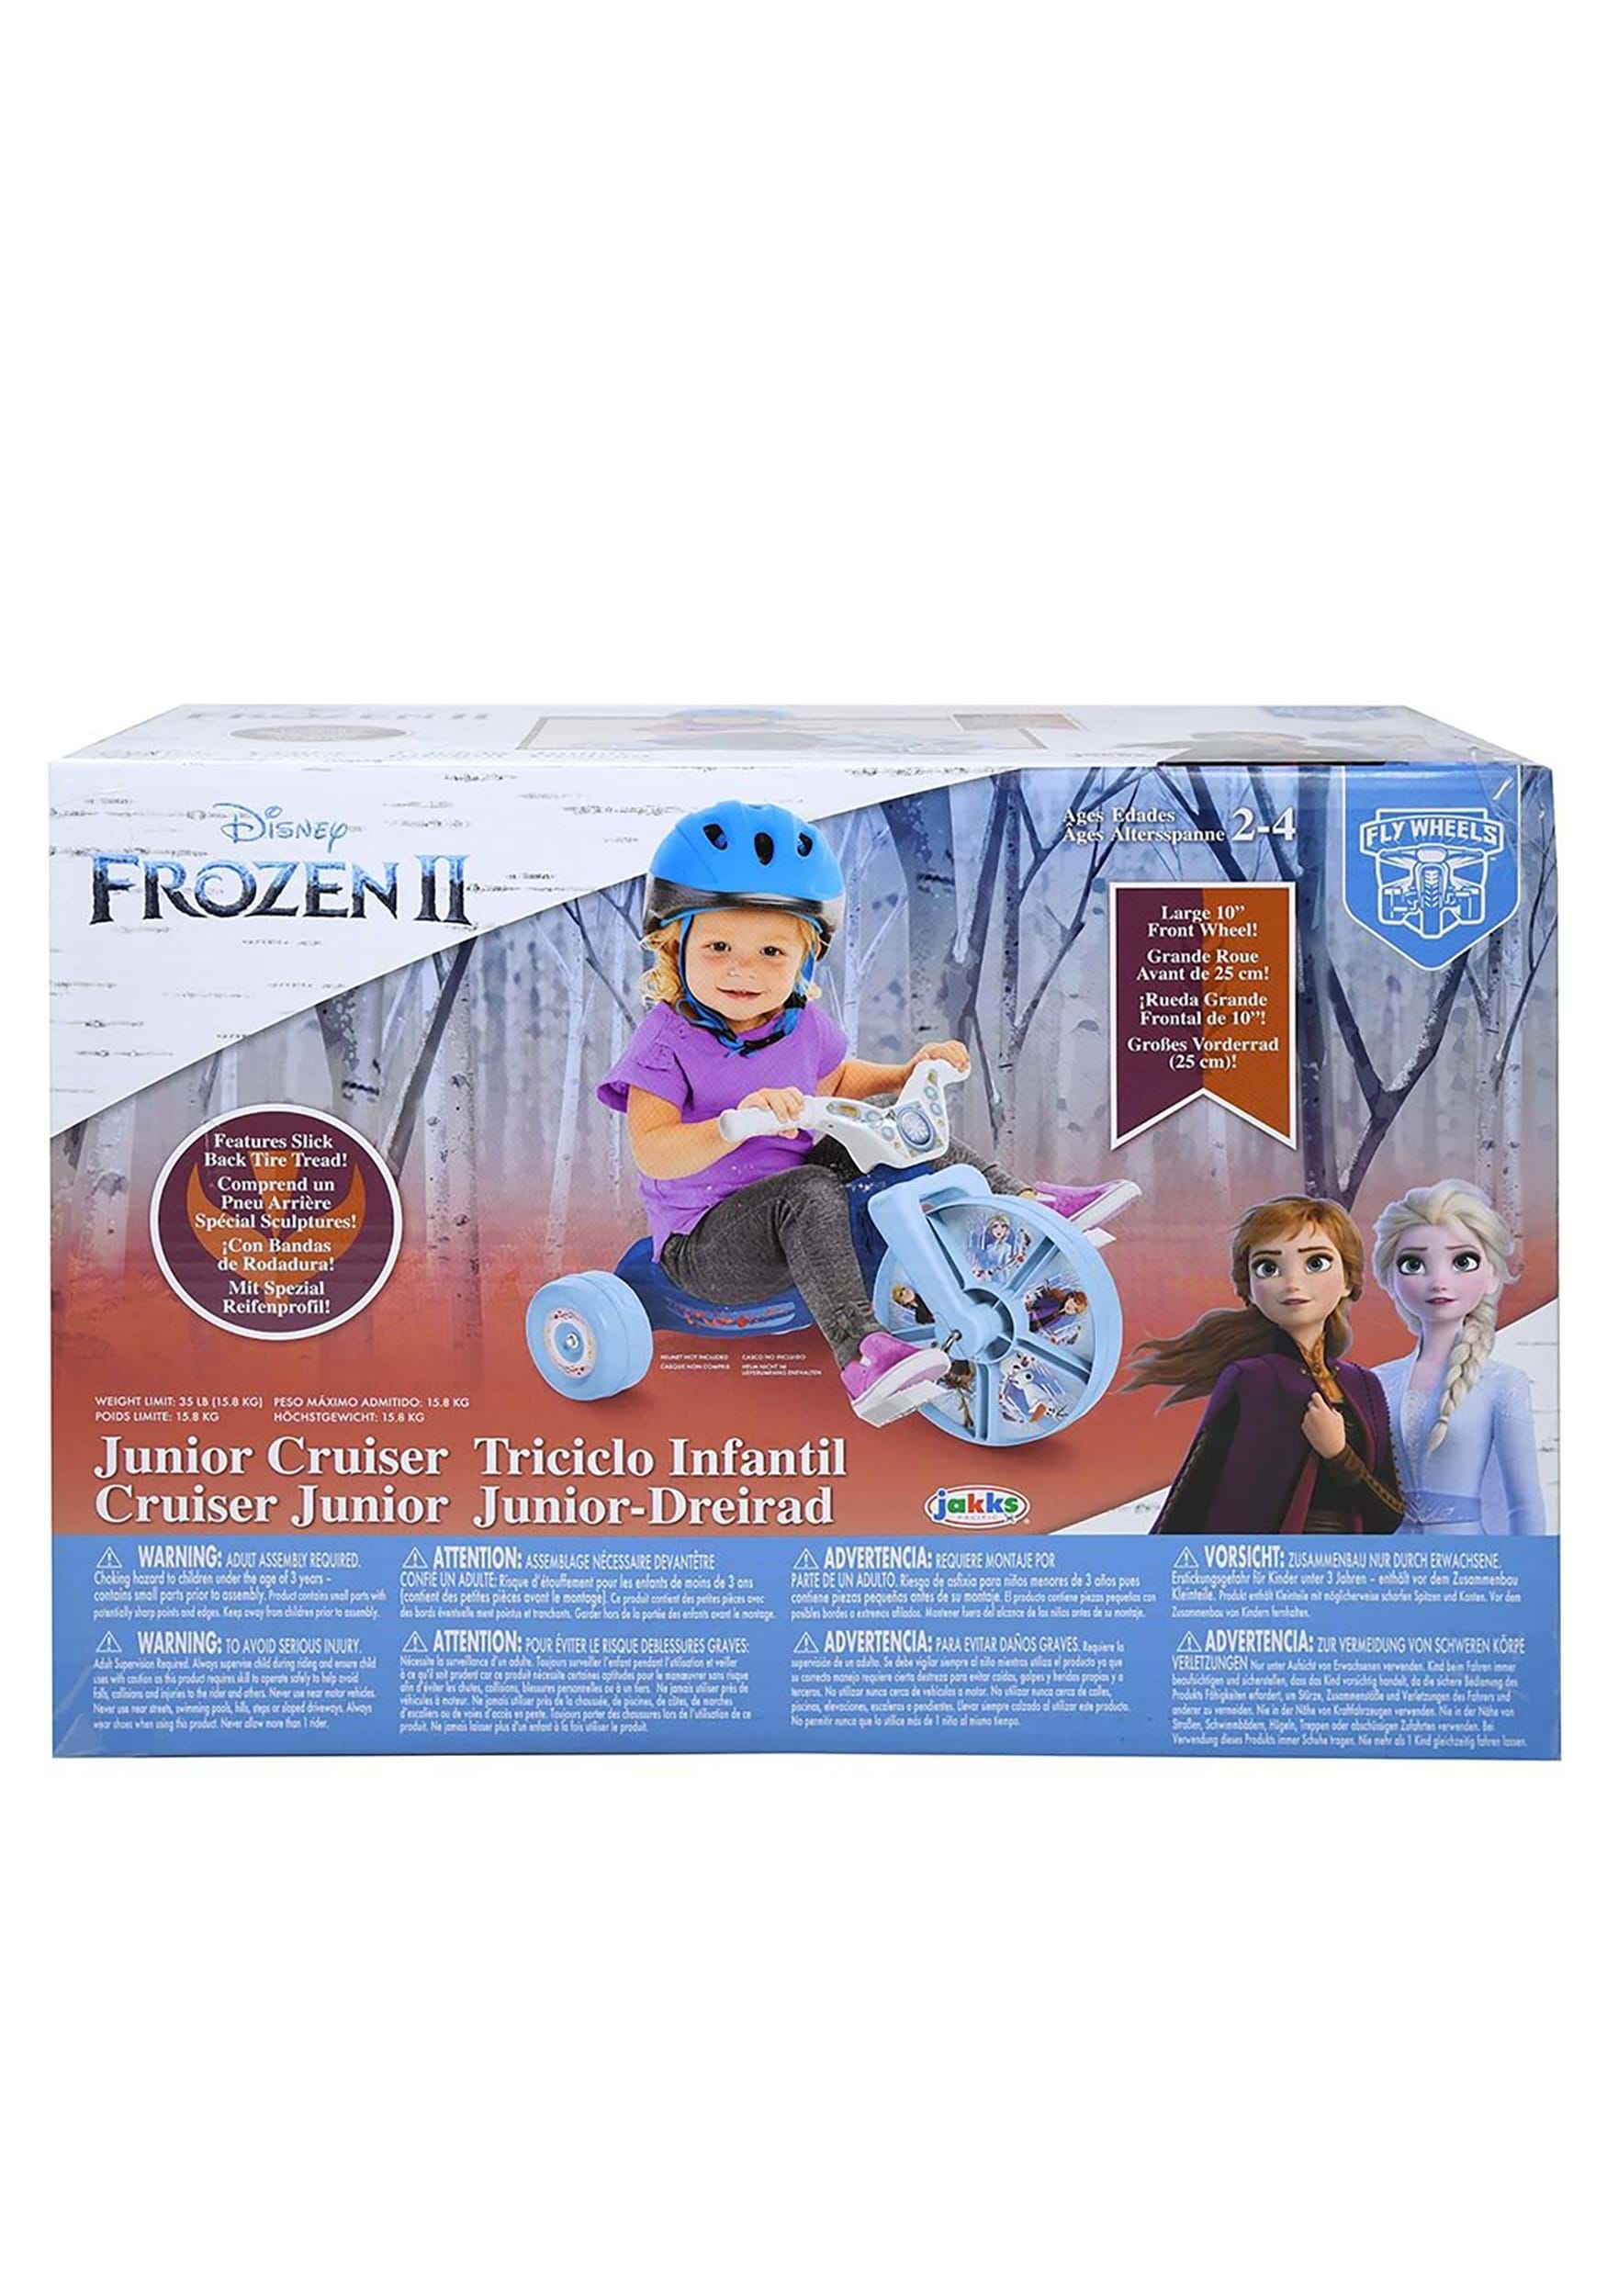 Frozen Fly Wheel 10 Inch Junior Cruiser